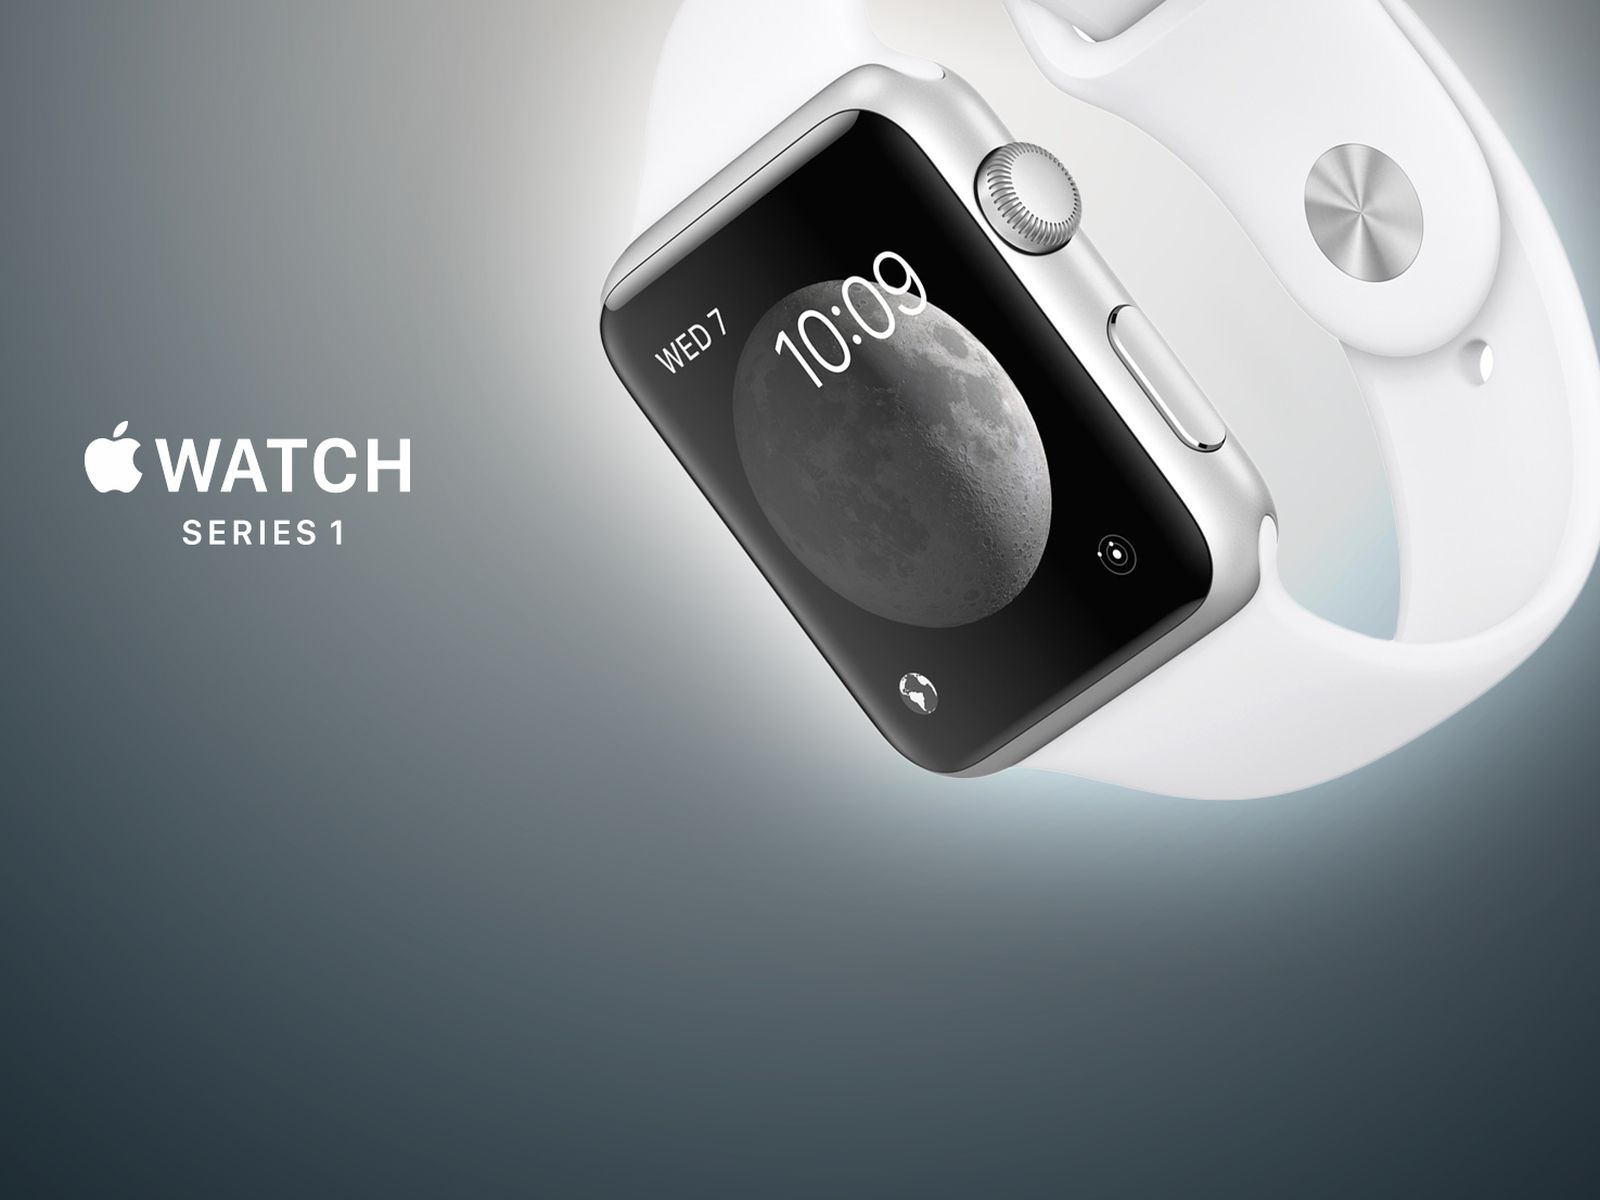 Smartklockan Apple Watch Series 1 är erkänd som en annan klassisk Apple-produkt